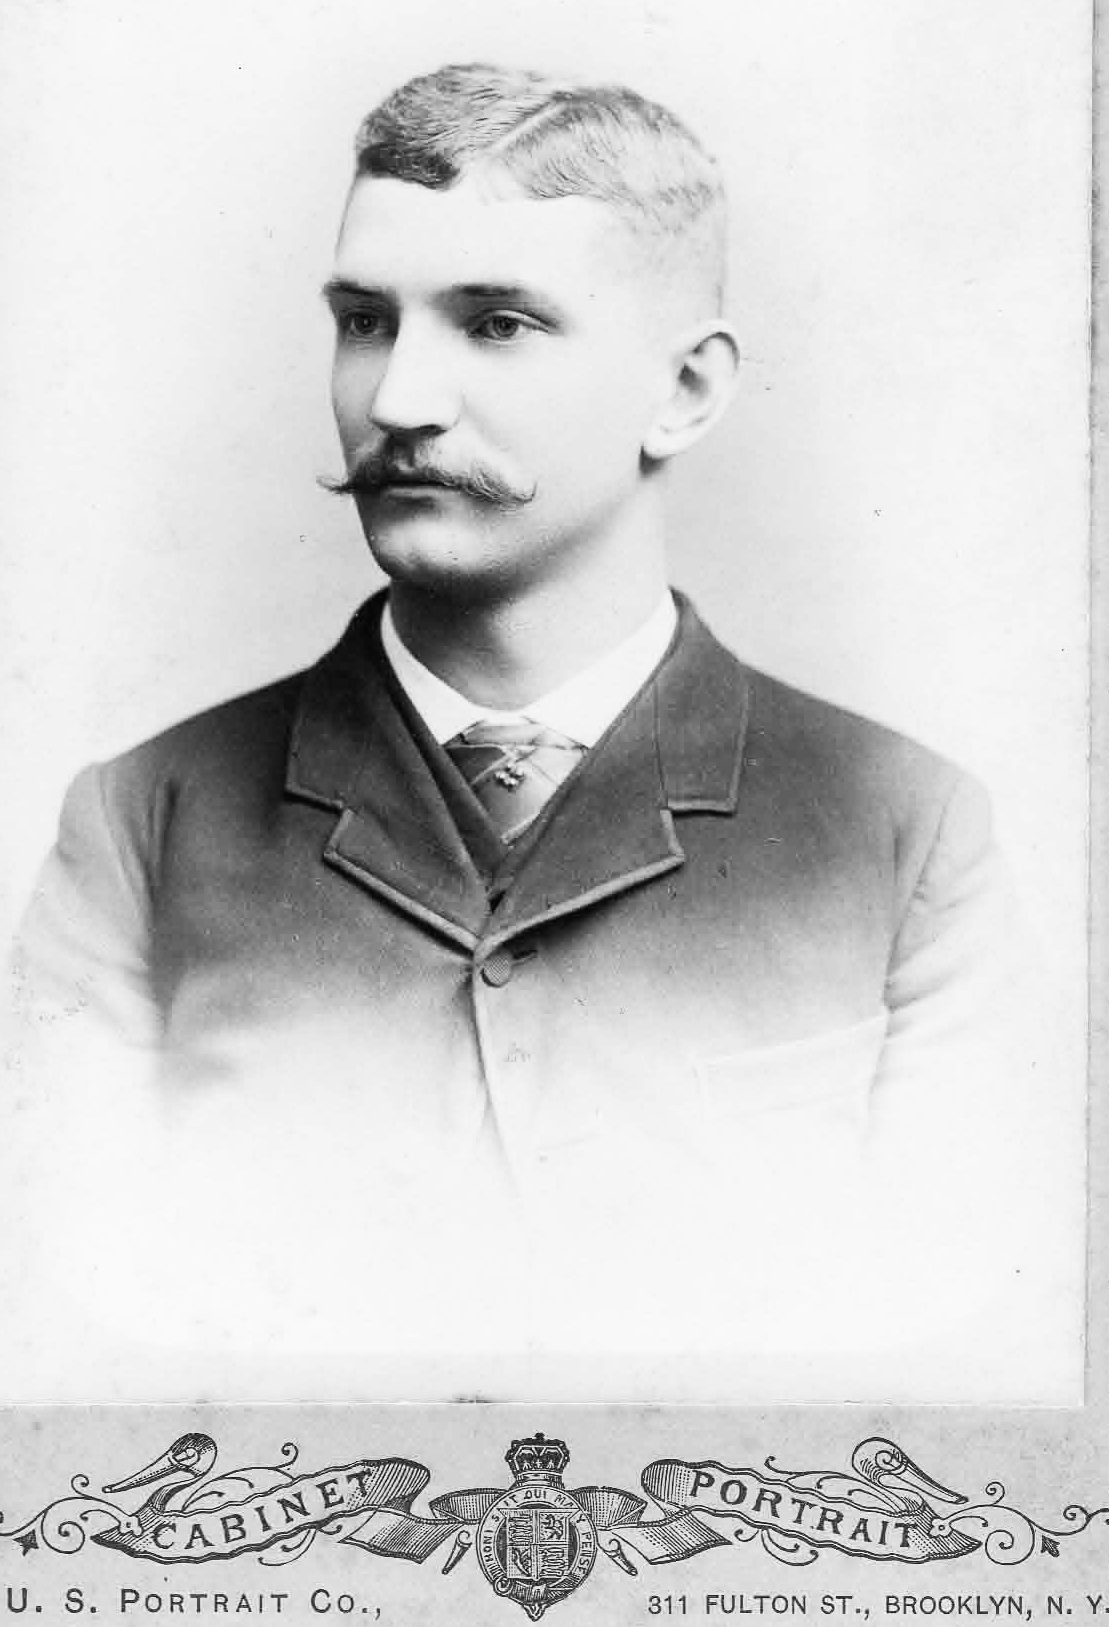 Lincoln C. Ranft, NY 1889